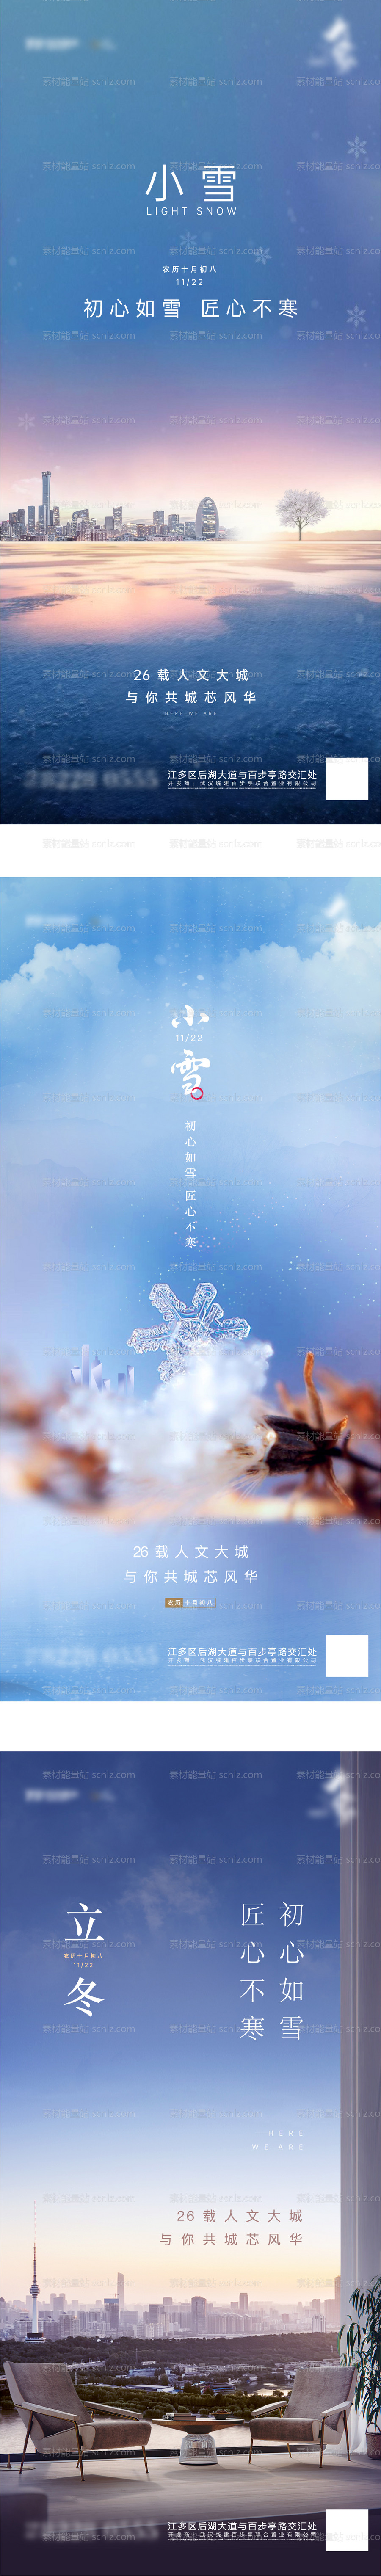 素材能量站-小雪大雪立冬节气海报